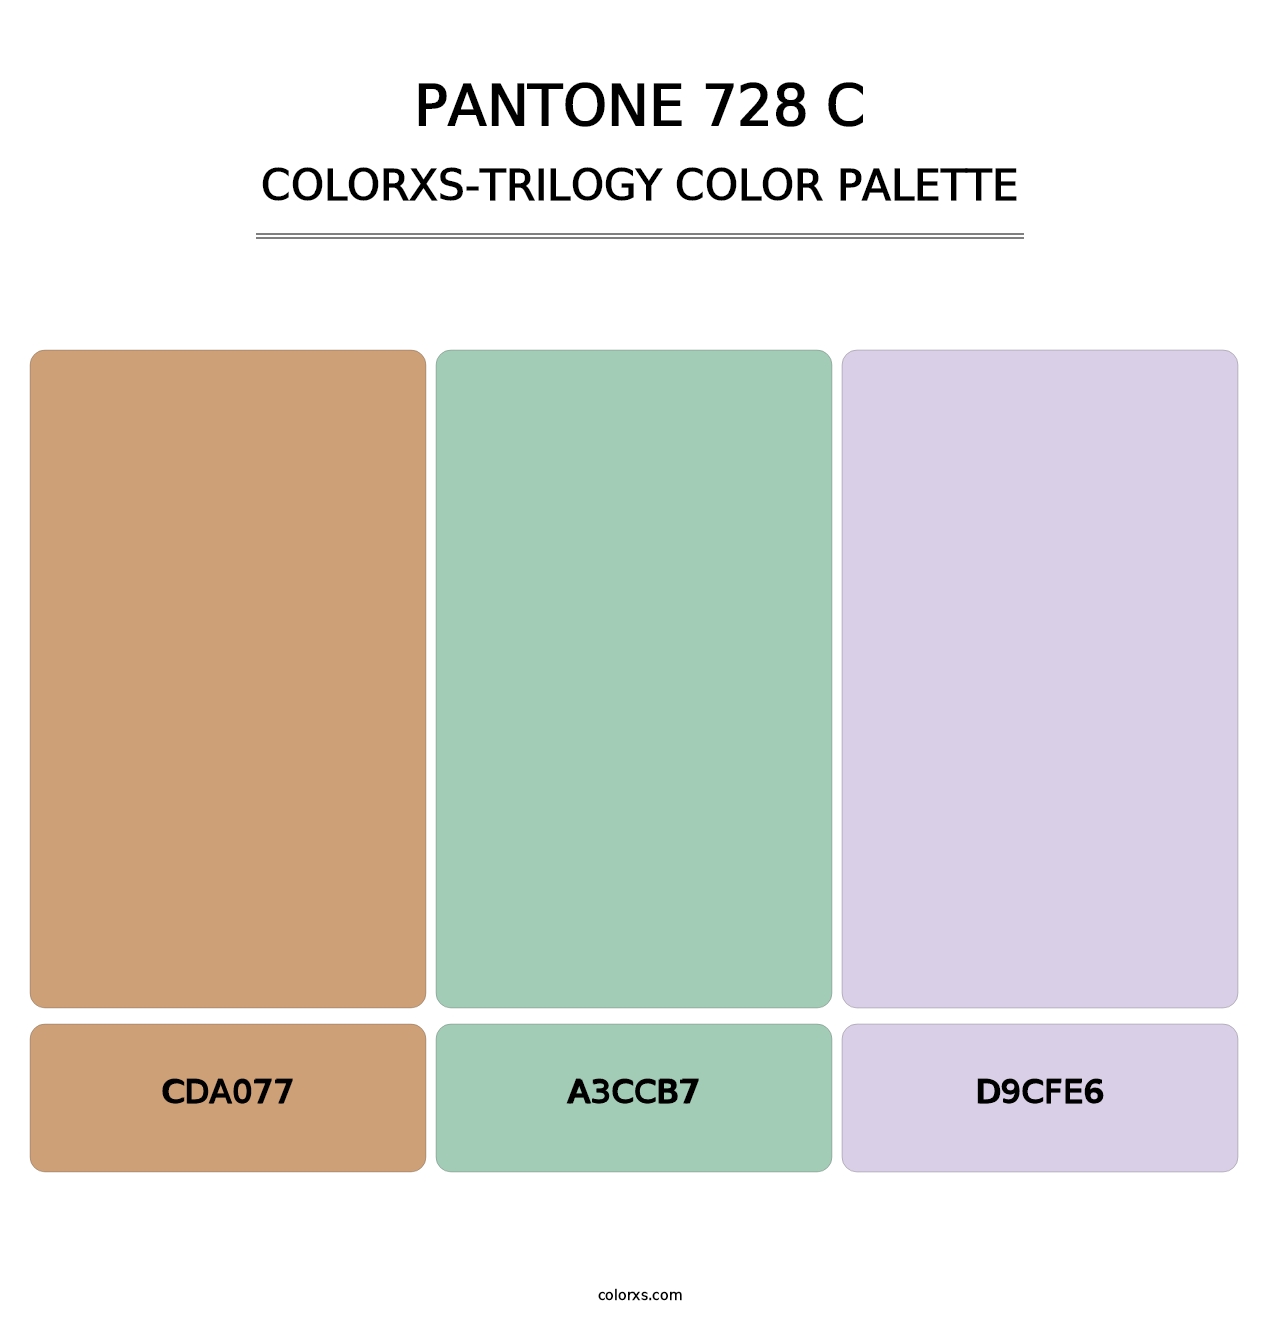 PANTONE 728 C - Colorxs Trilogy Palette